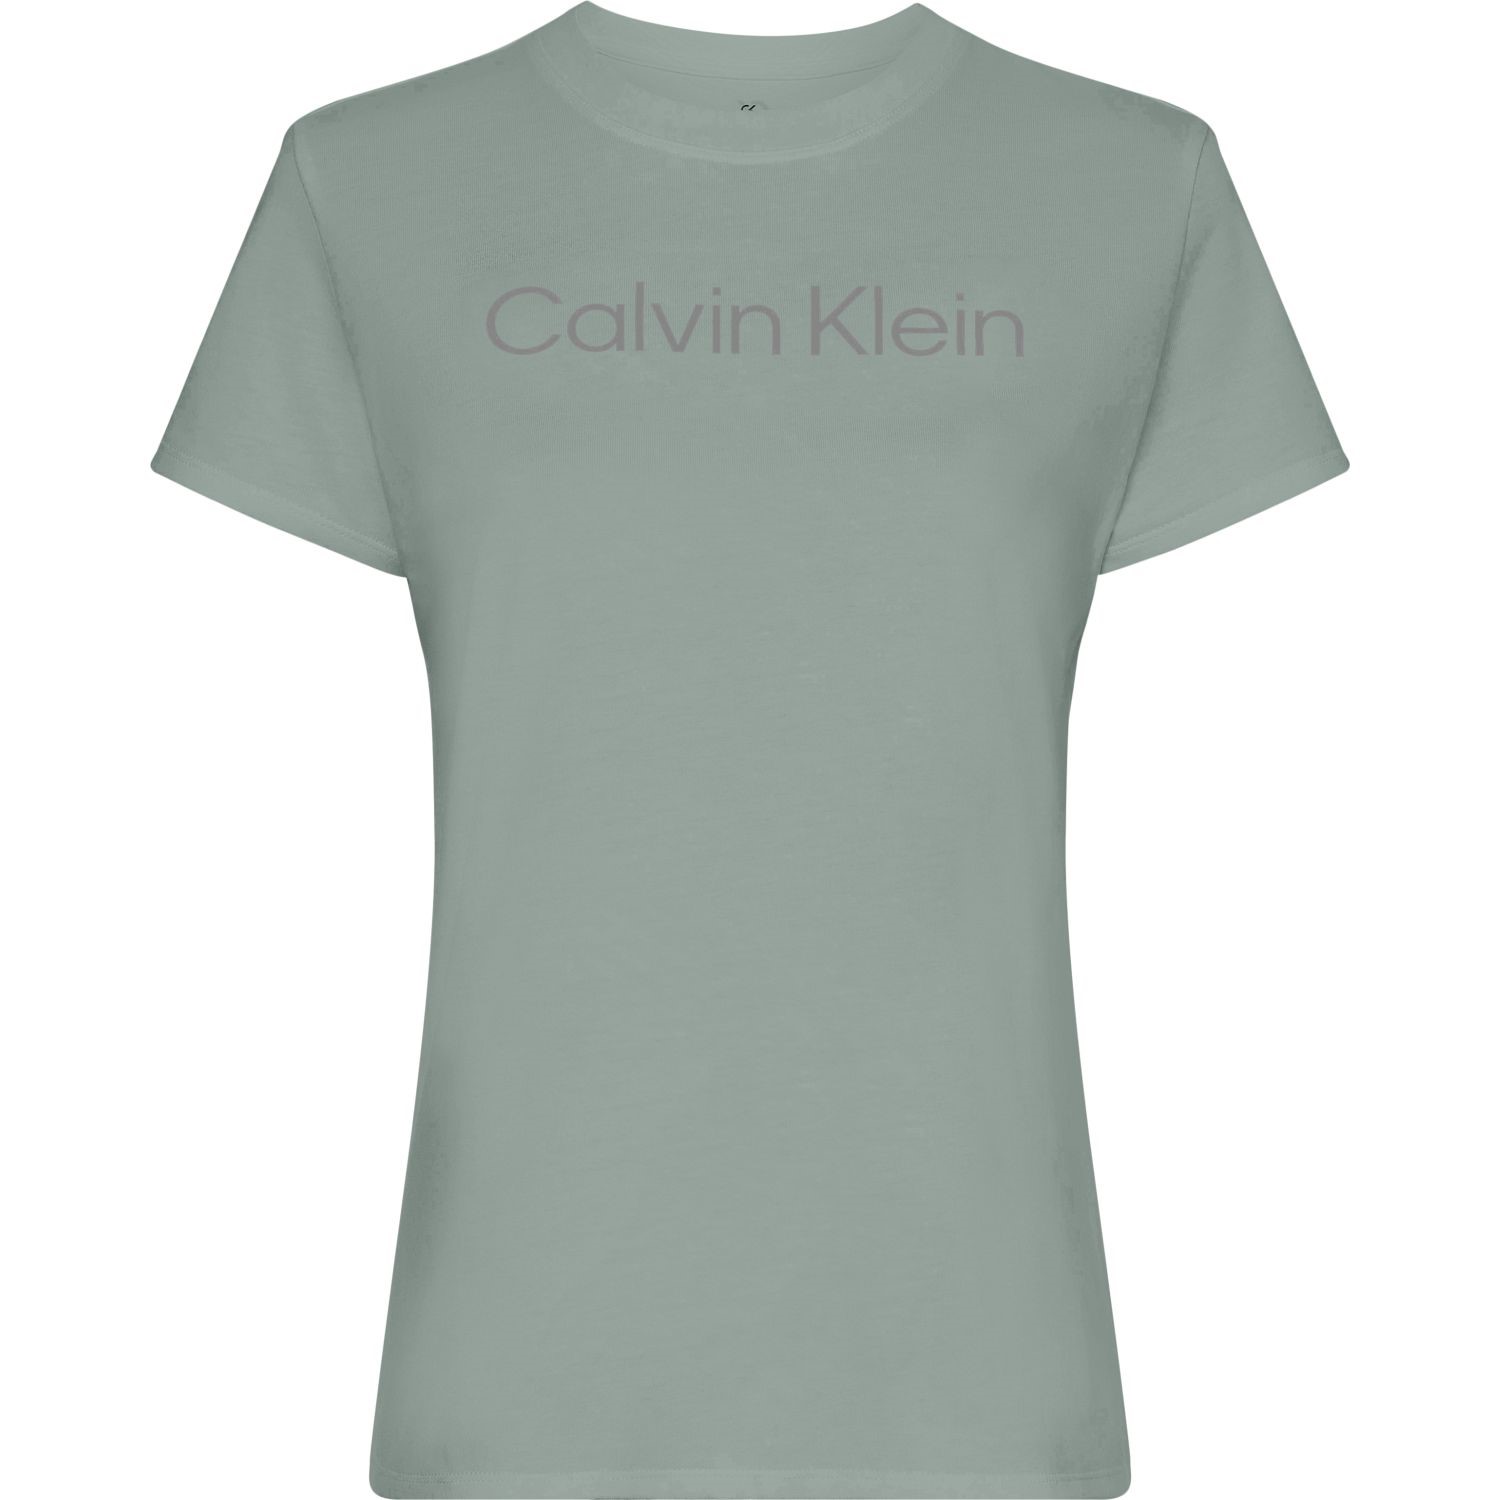 Essentials Calvin - Sportbekleidung - Sport T-Shirt T-Shirts Sport - Klein SS